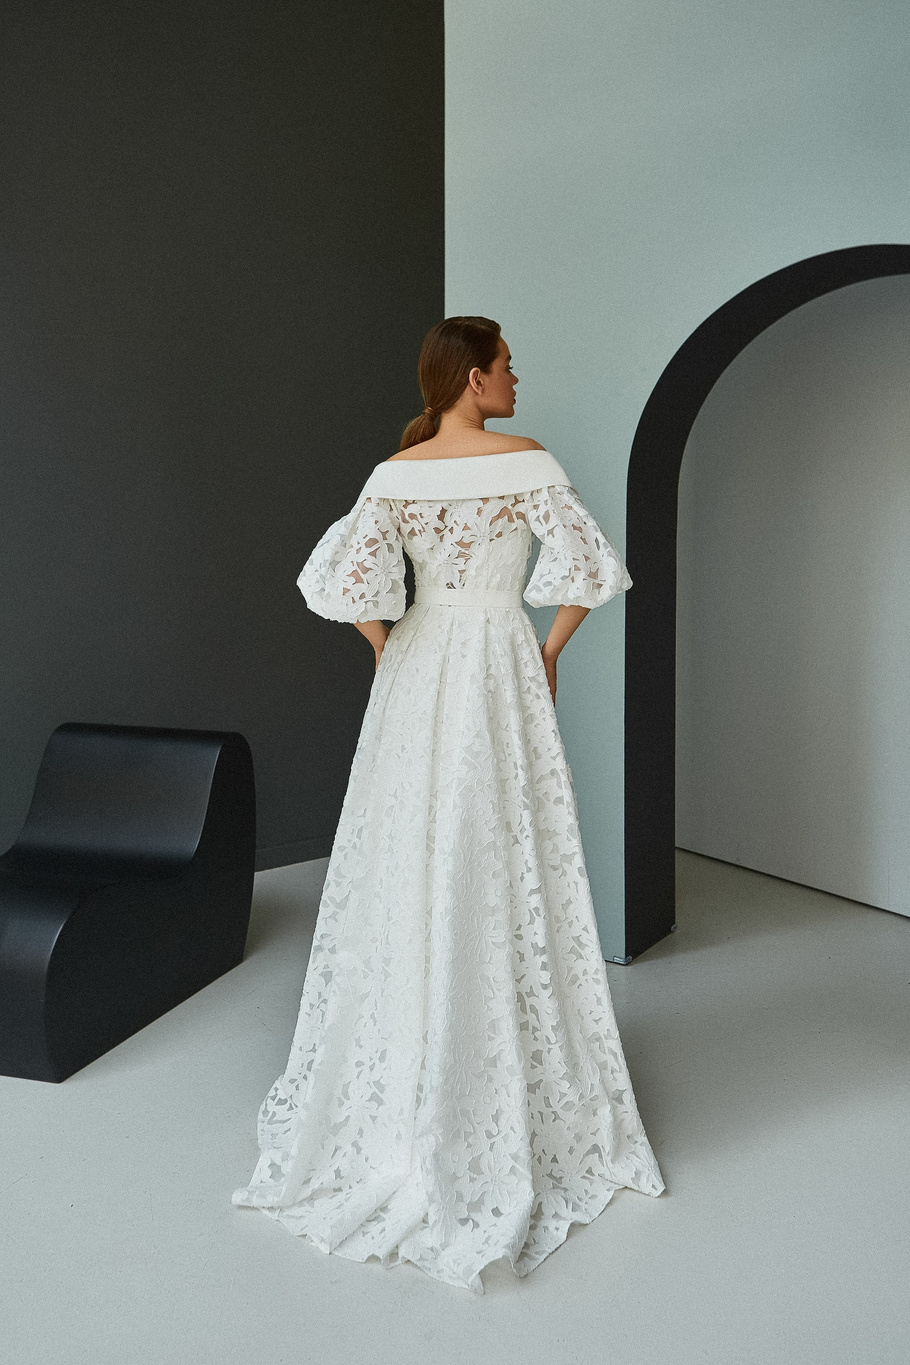 Свадебное платье «Риз» Мэрри Марк  — купить в Краснодаре платье Риз из коллекции «Инспирейшн» 2021